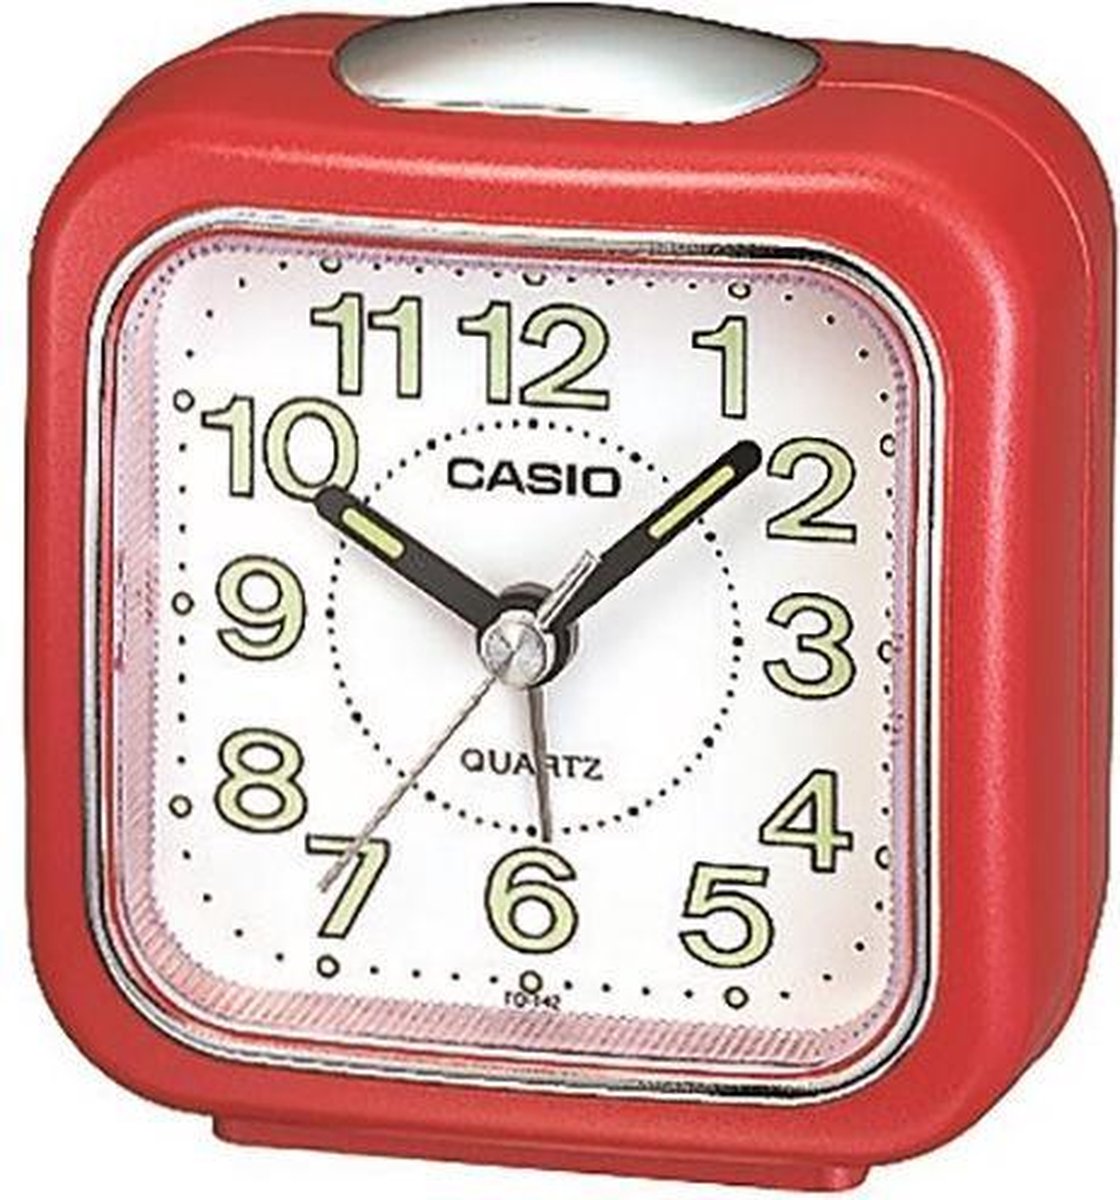 Casio wekker TQ-142-4DF rood met lichtgevende wijzers